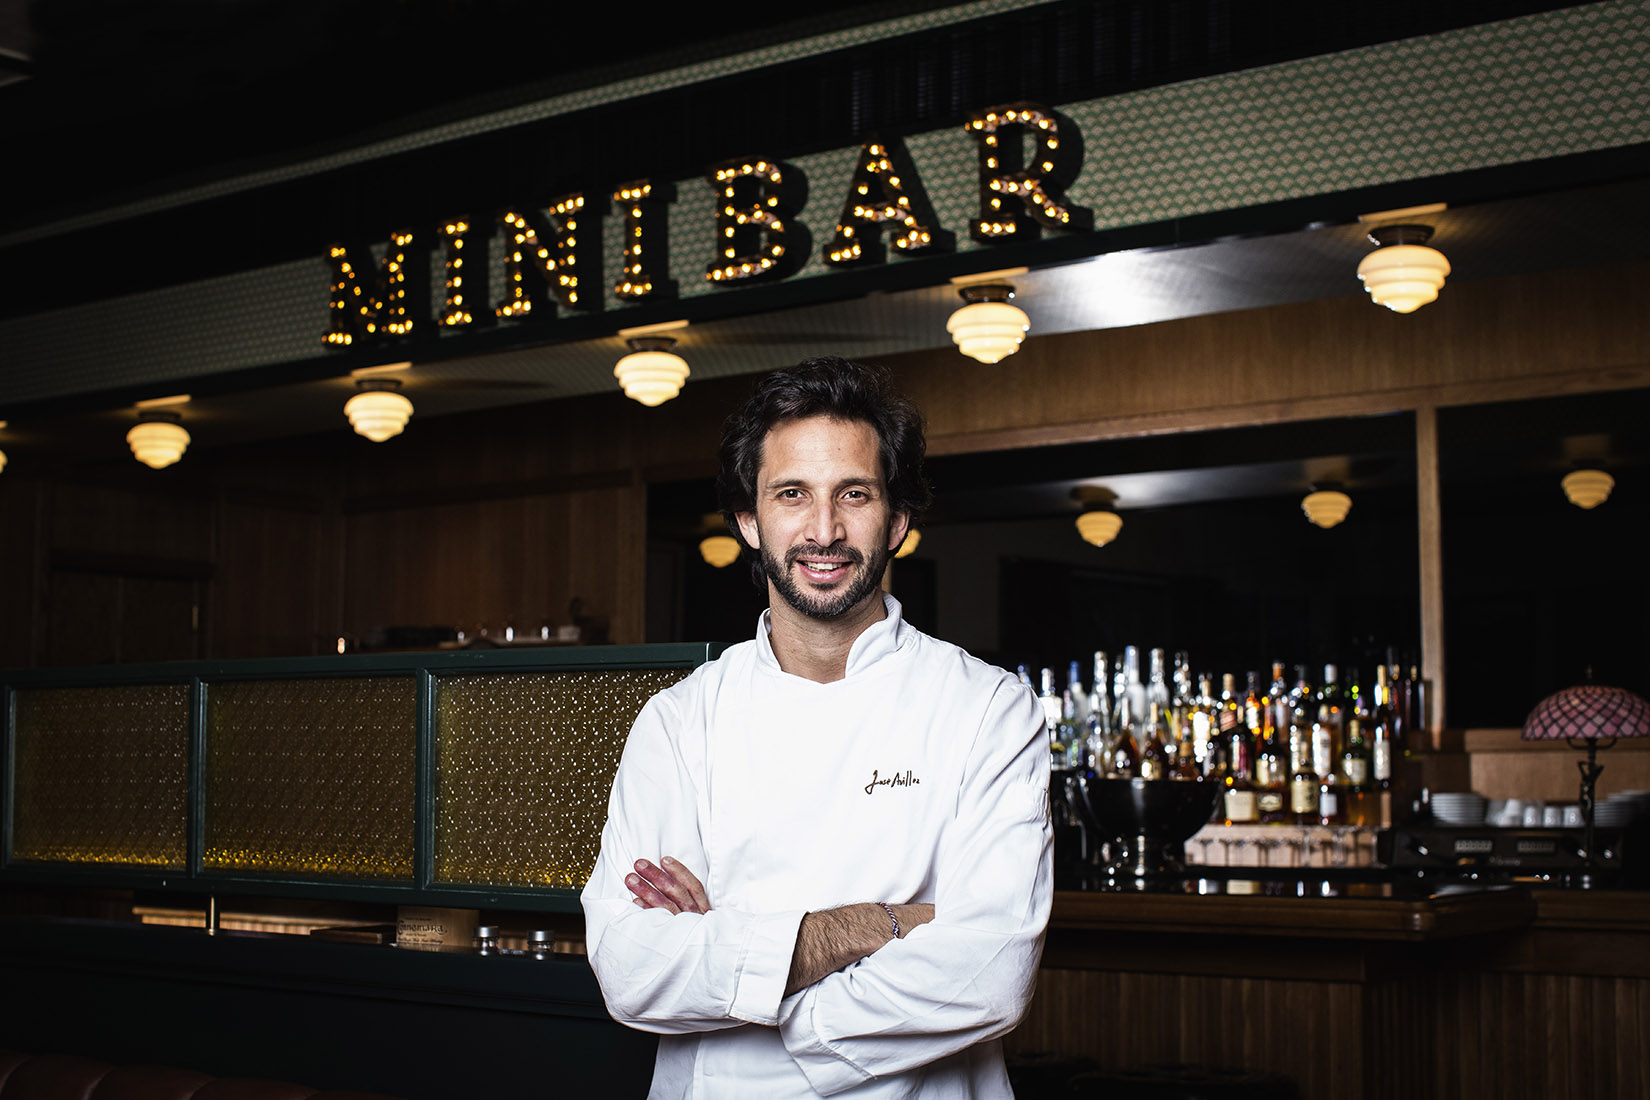 O chef José Avillez fotografado no seu novo espaço, o restaurante/Bar MiniBar no Chiado, Lisboa. foto- paulo barata 2014